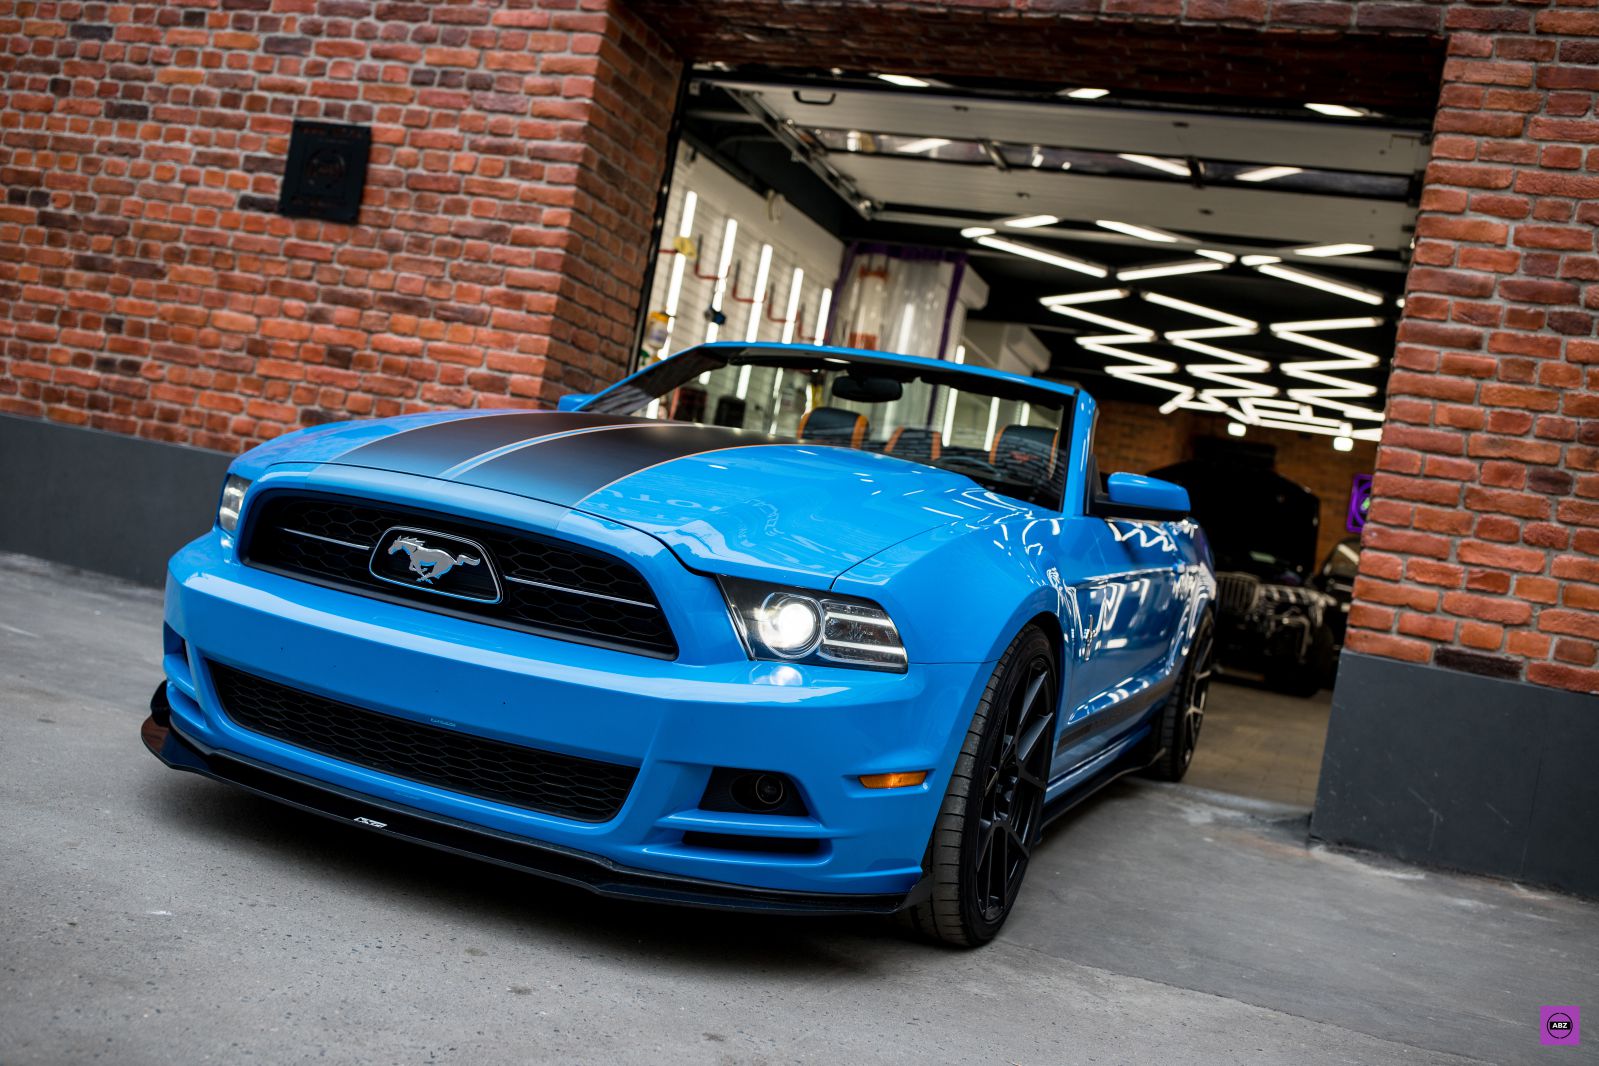 Нанесение нанокерамики на автомобиль Ford Mustang S197 Голубой 21.10.19.